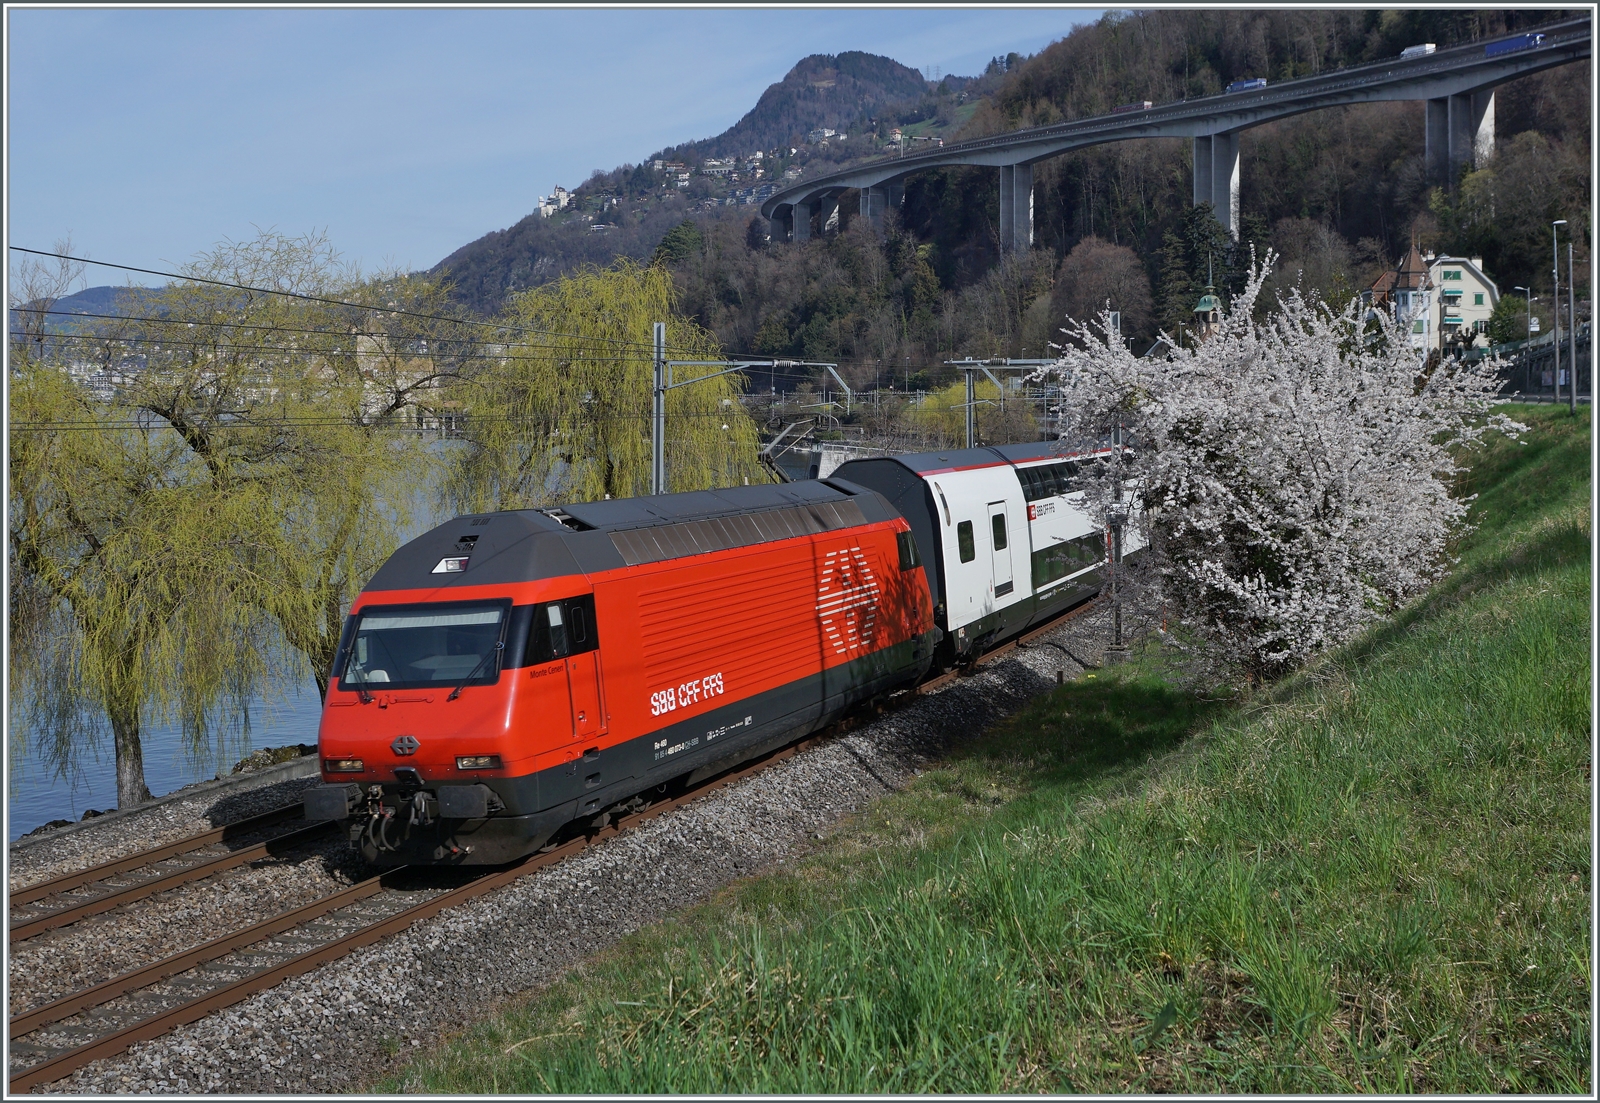 Die SBB Re 460 073-0 ist mit einem Doppelstock IR 90 von Genève Aéroport nach Brig beim Château de Chillon unterwegs, welches zugunsten des blühenden Strauch rechts im Bild bei der Bildgestaltung hinter den Bäumen links im Bild platziert wurde.  

21. März 2023